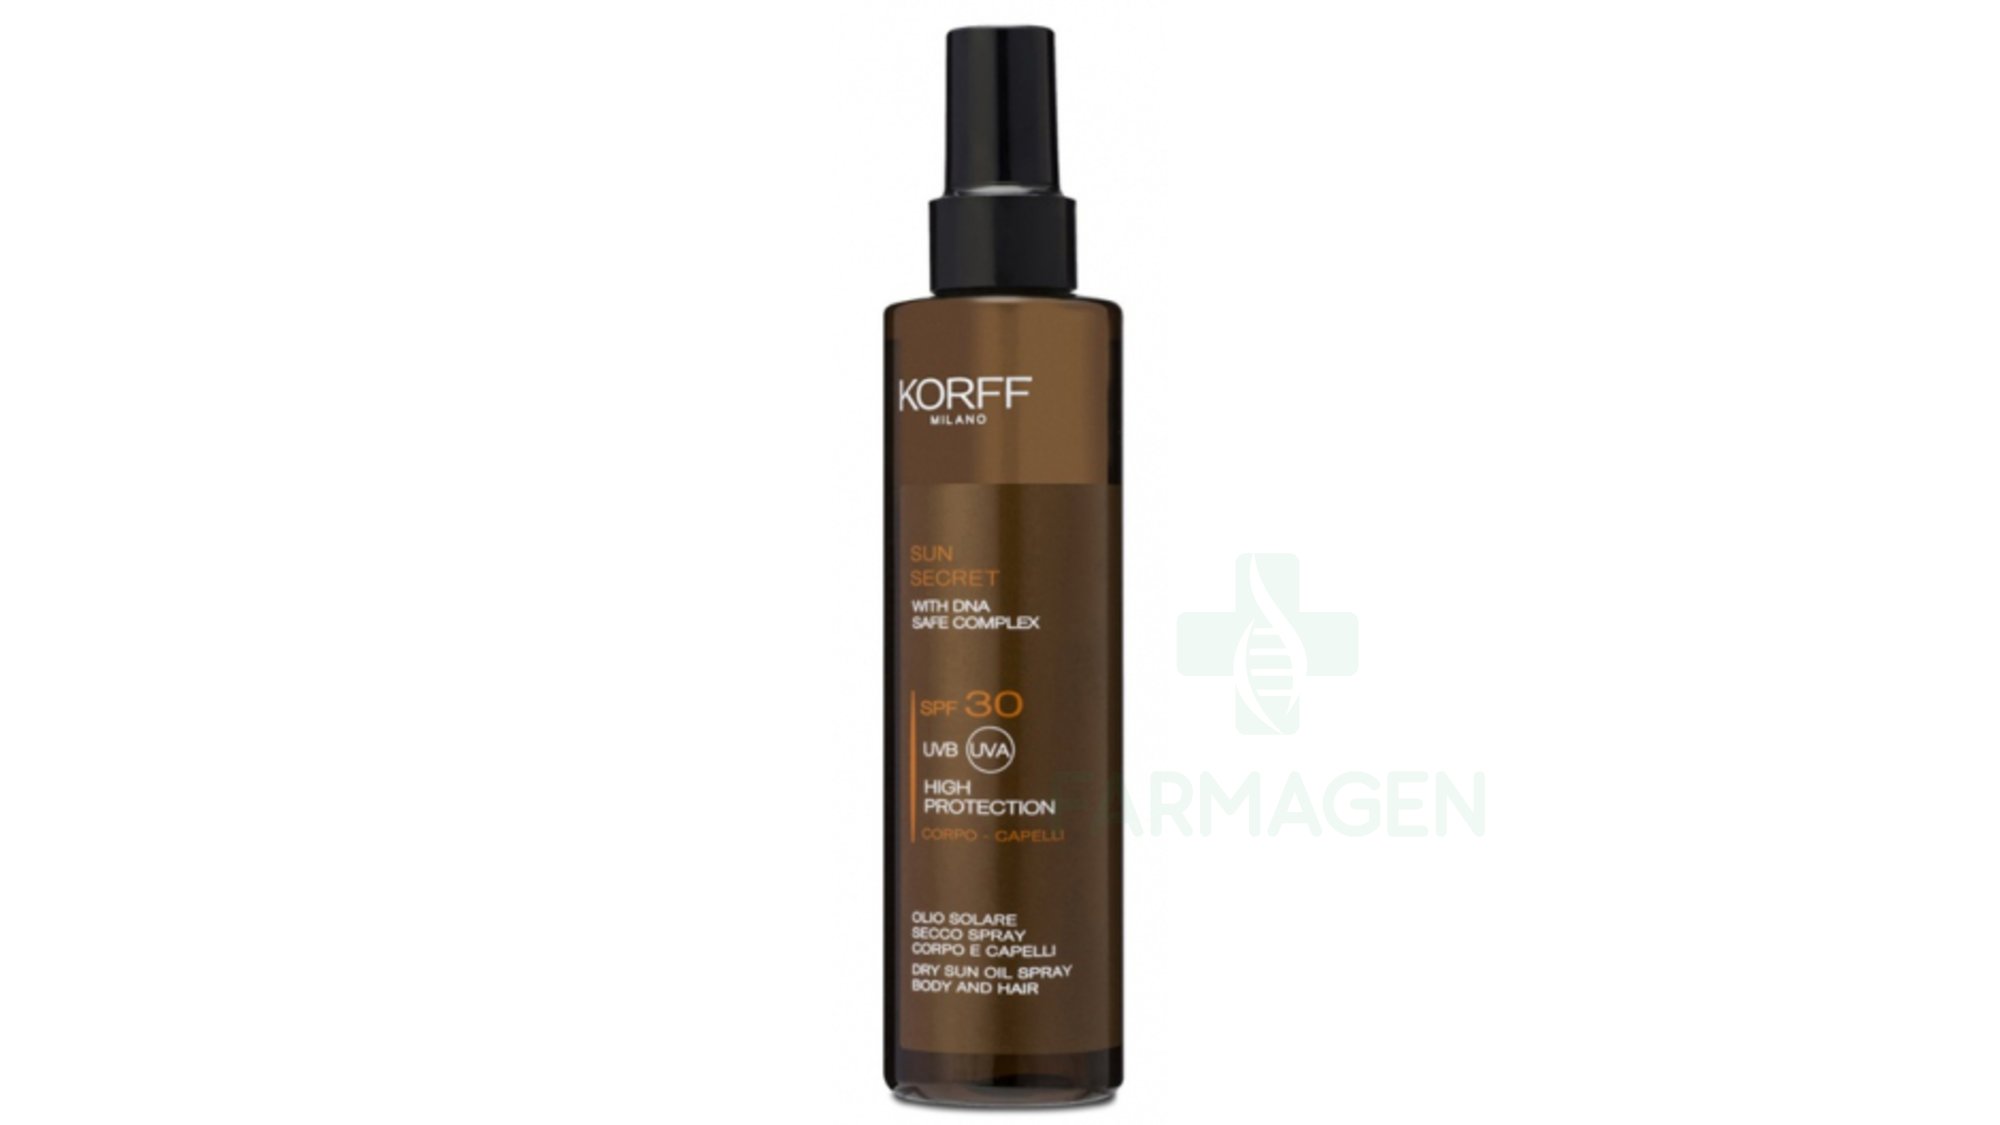 Sun Secret Dry Sun Oil Spray Body and Hair SPF 30